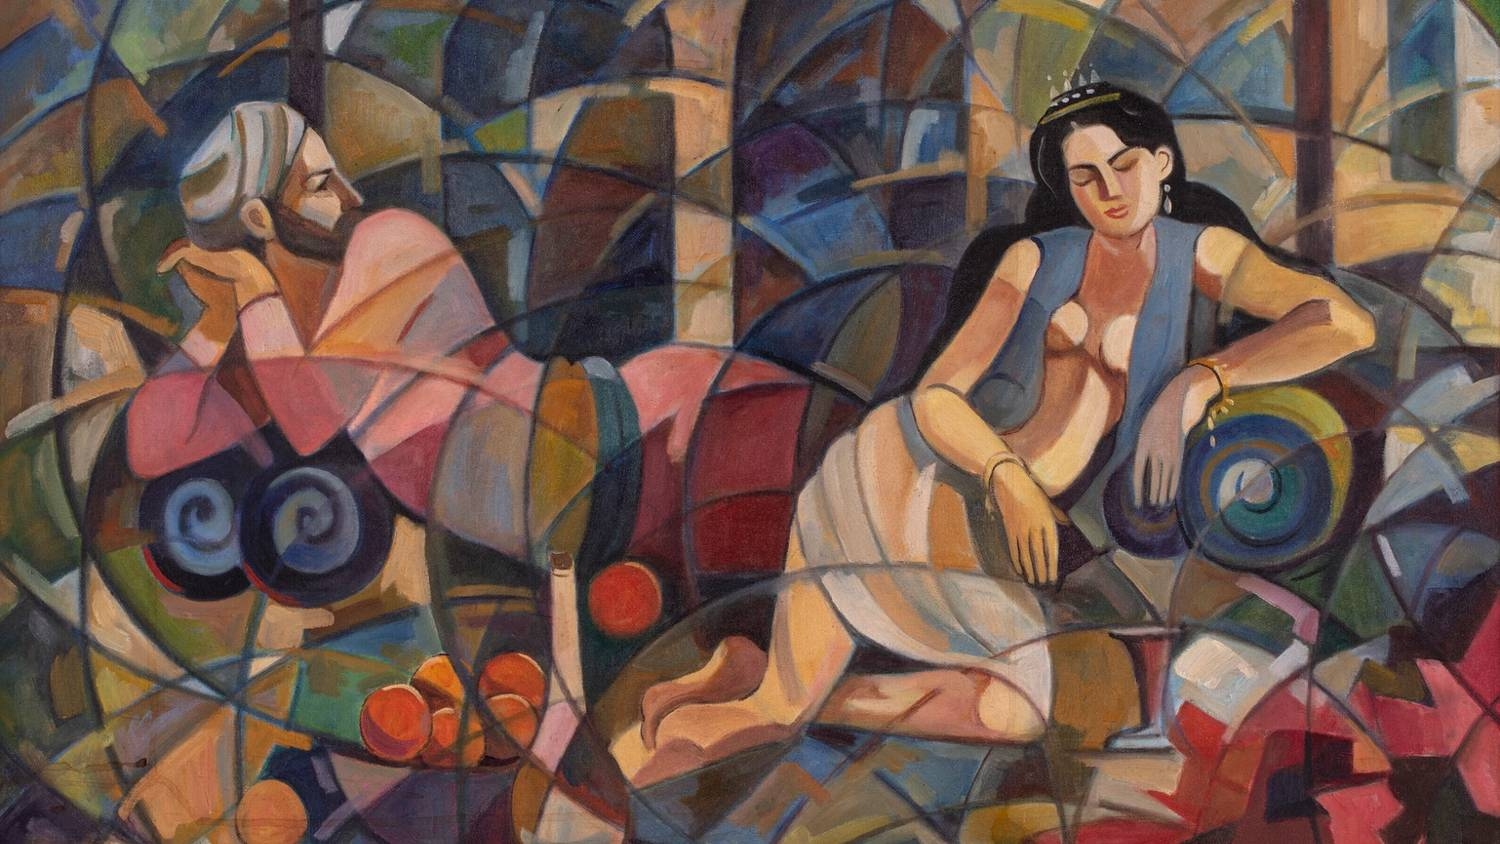 The Couple (1976), tableau de l’artiste irakien Hafidh al-Droubi, révèle une forte influence picassienne (domaine public)